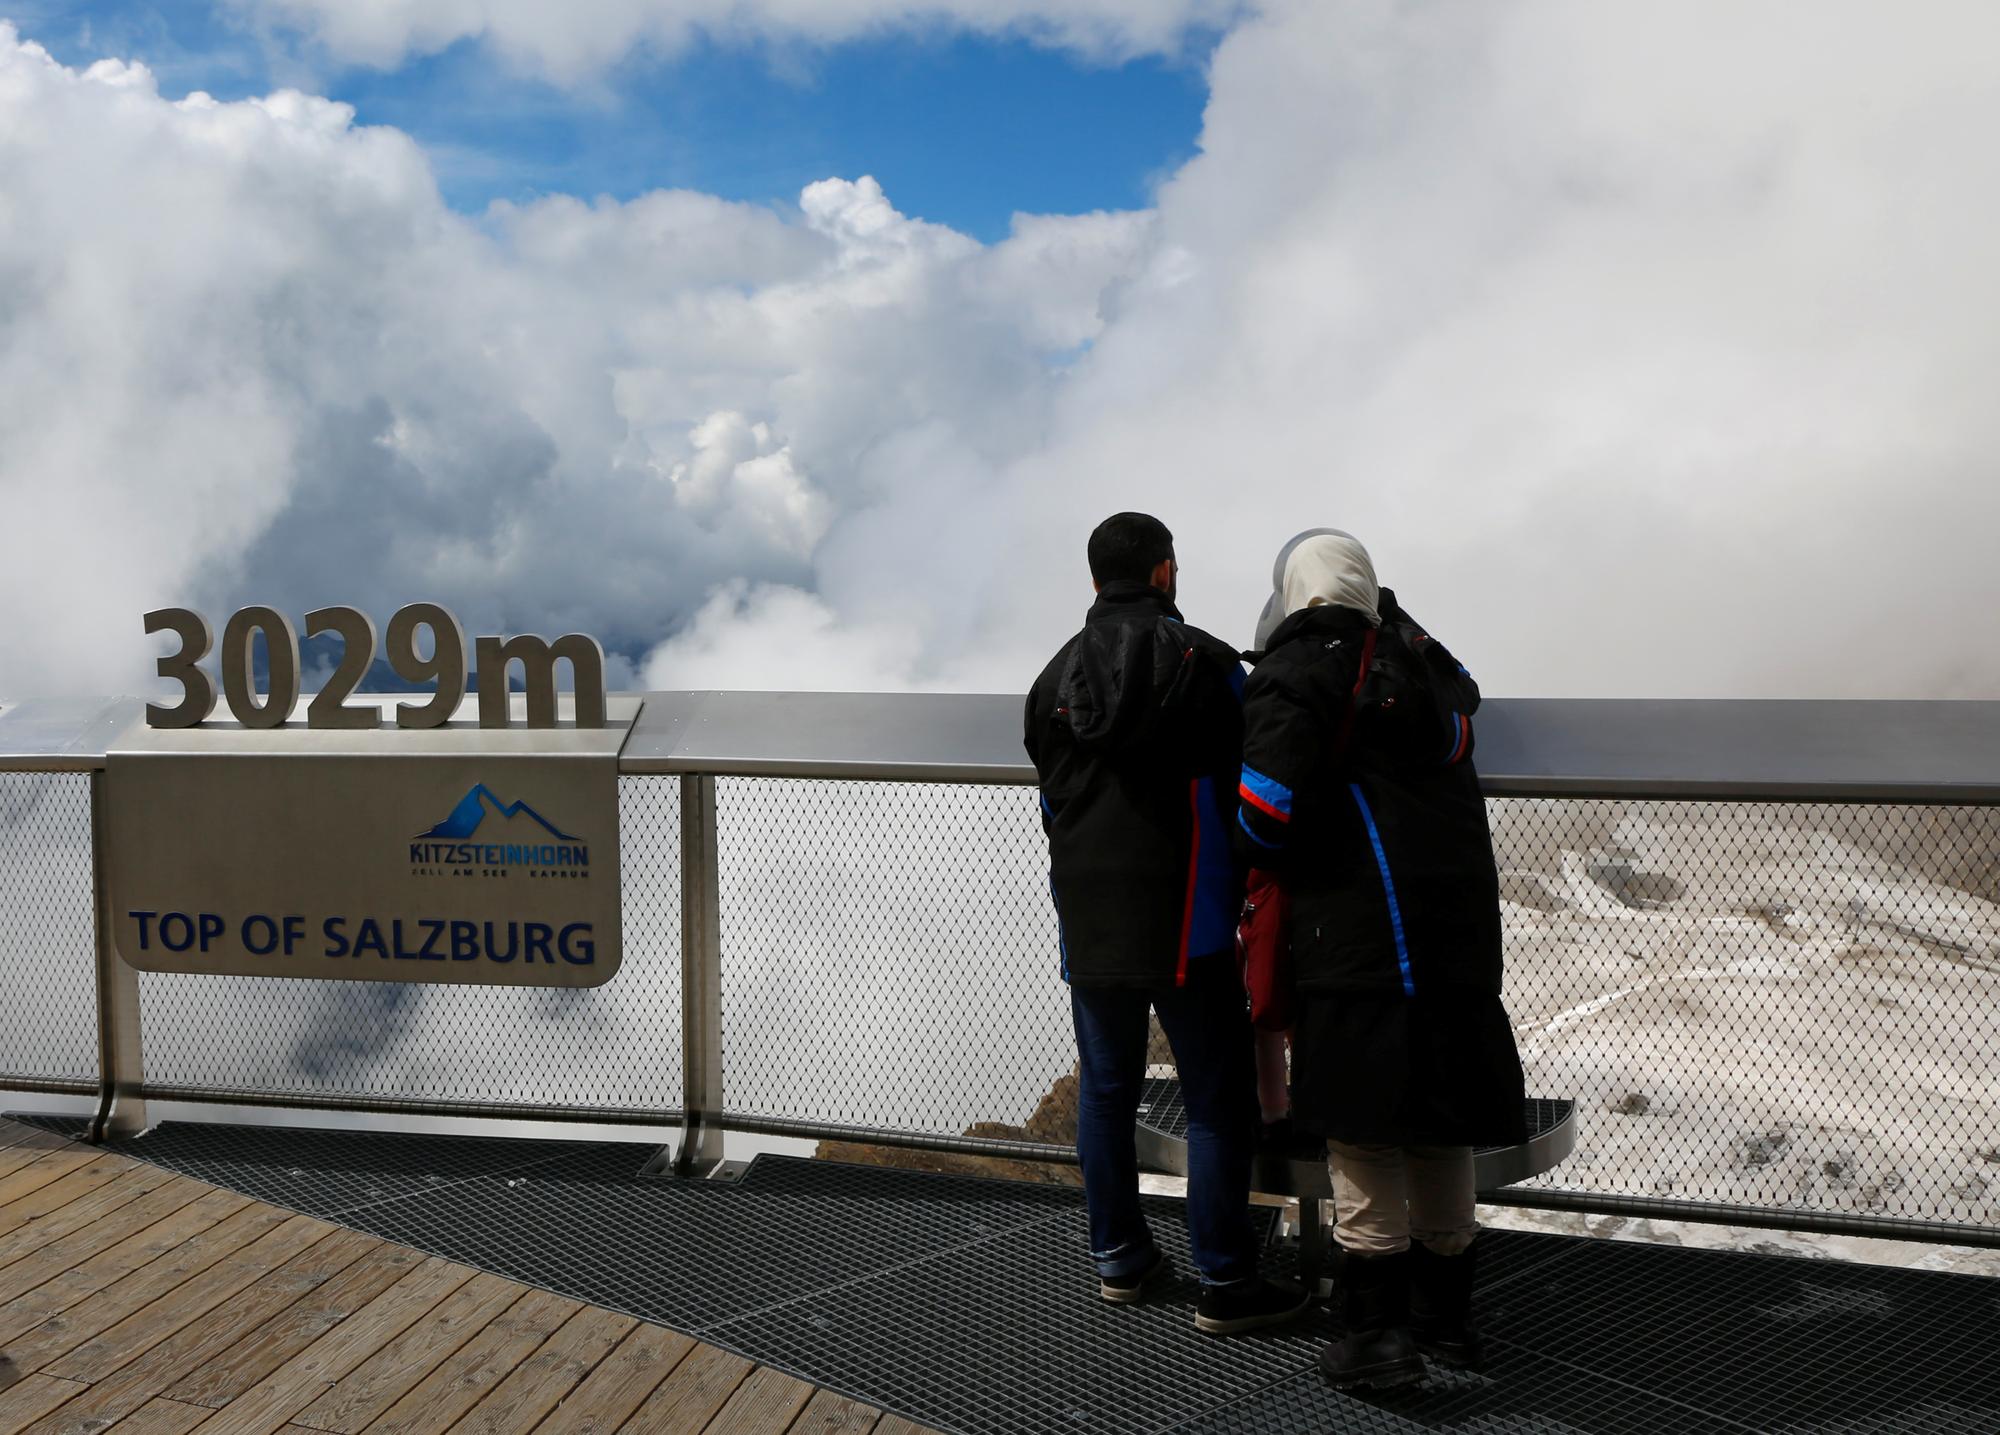 Une terrasse panoramique au sommet du Kitzsteinhorn, à 3029 mètres d'altitude, offre une vue imprenable sur les montagnes du Land de Salzburg... quand le ciel est dégagé. [REUTERS - LEONHARD FOEGER]